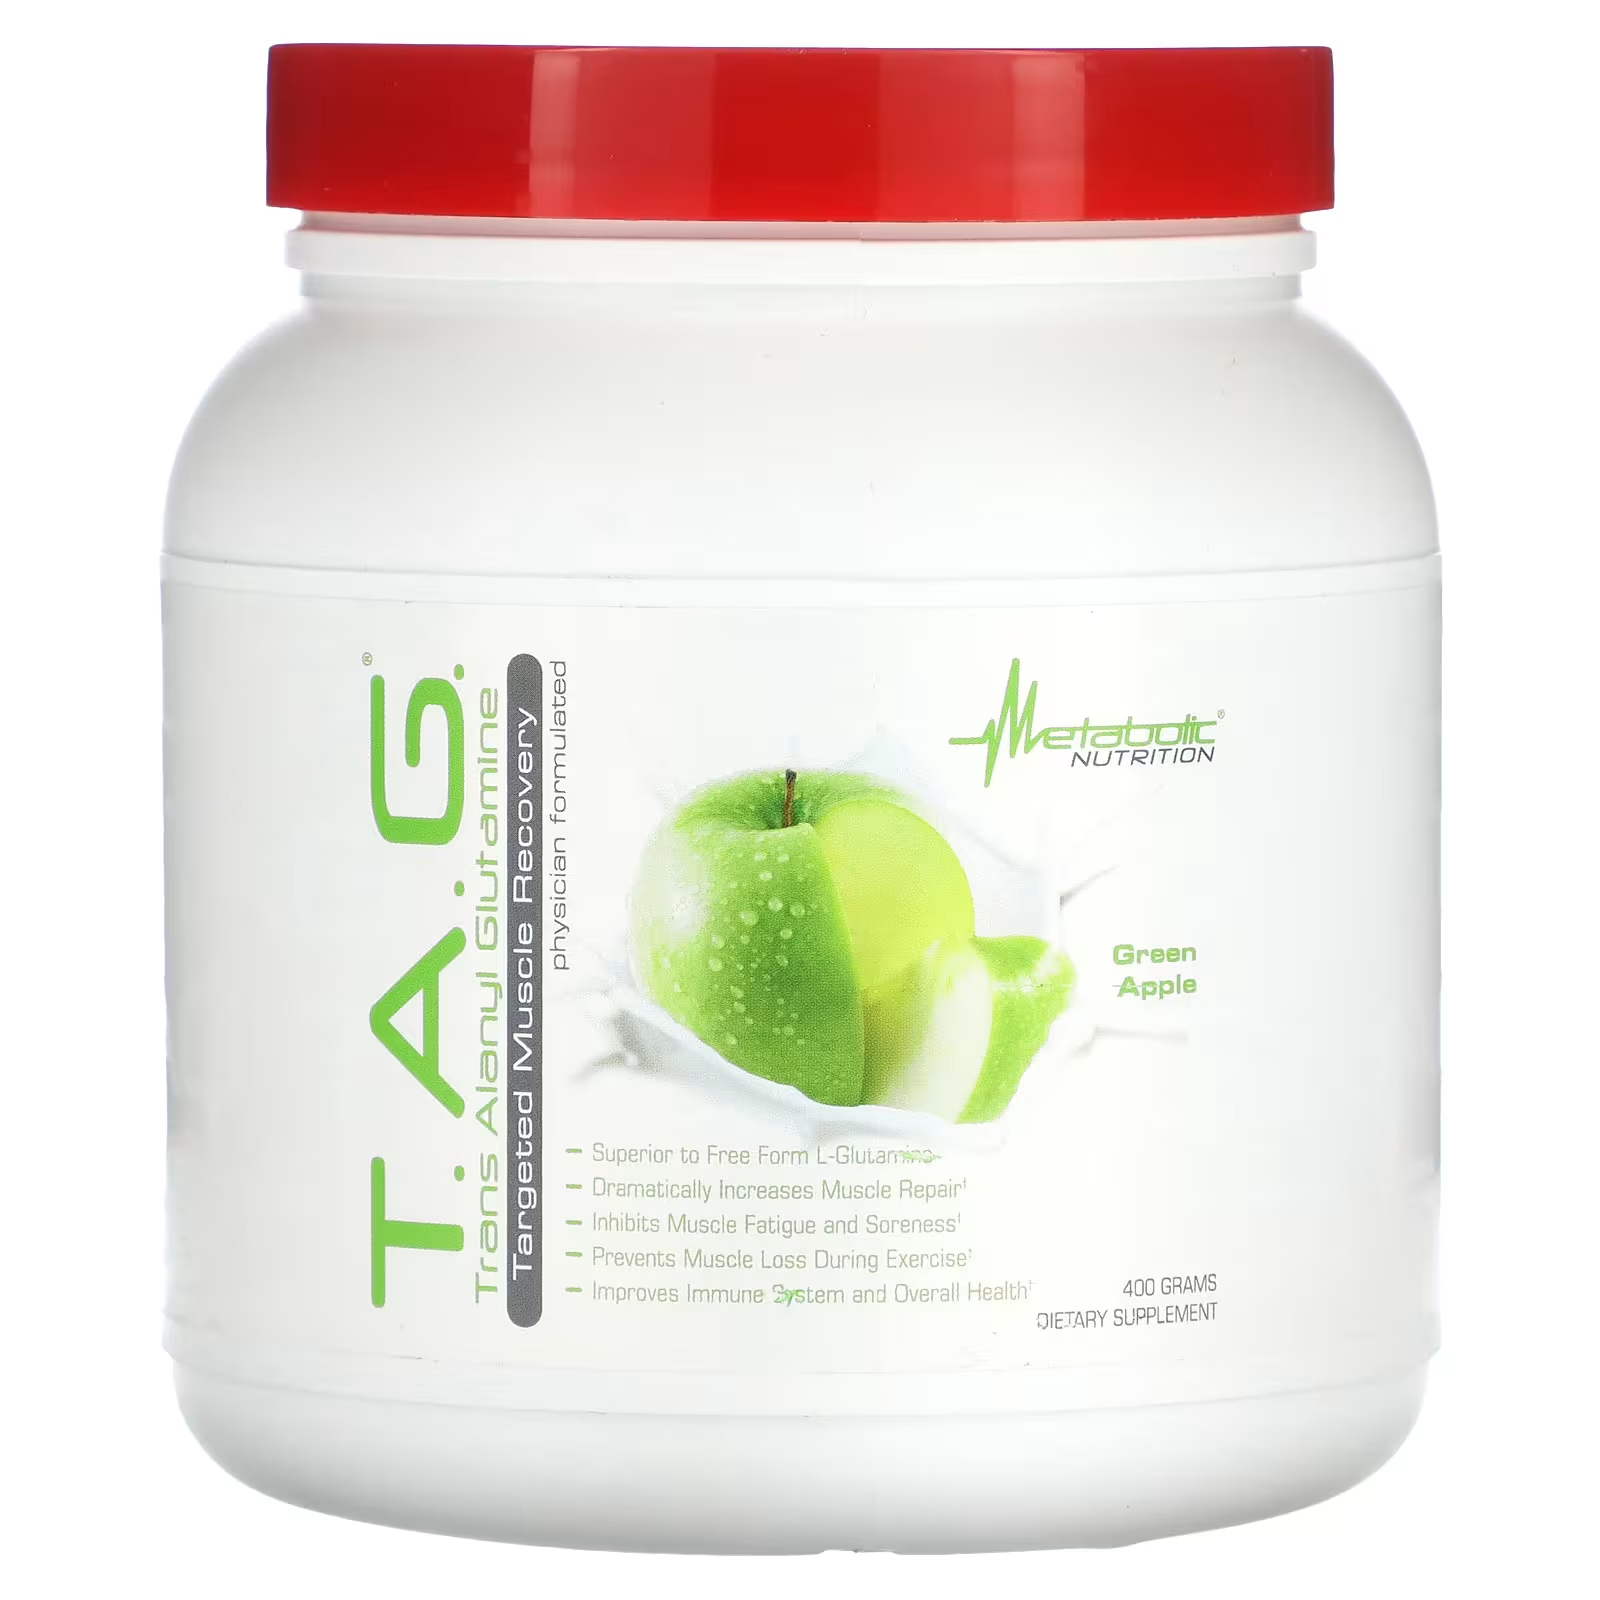 Пищевая добавка Metabolic Nutrition TAG Green Apple, 400 г l глютамин порошок в свободной форме 3 53 унции 100 г